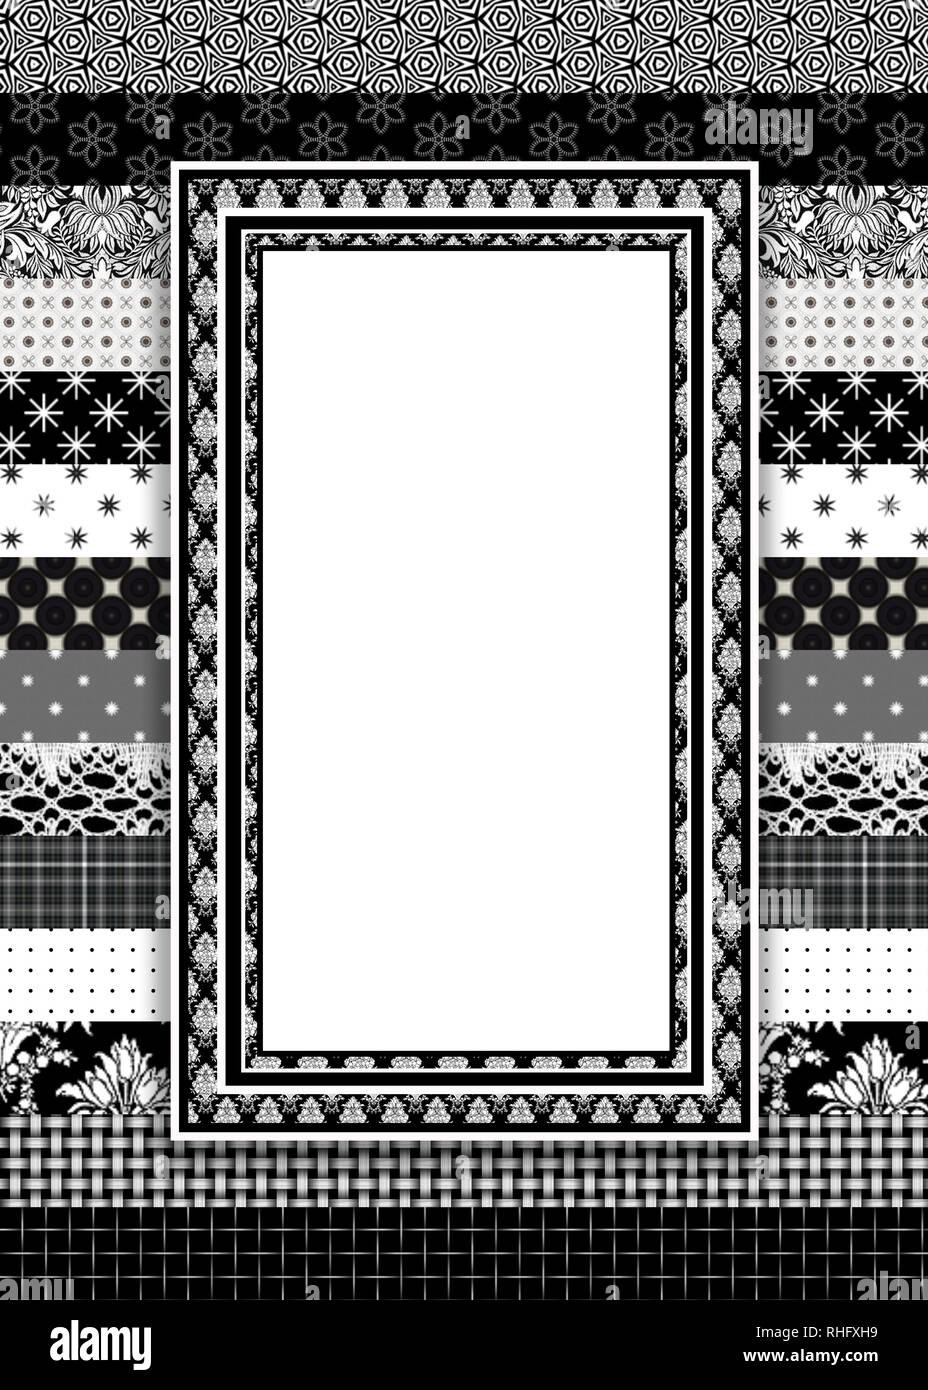 Arrière-plan graphique avec des couches de tissu-comme imprime n noir, gris et blanc. Certains ont des zones de texte dans le centr de l'image. Banque D'Images